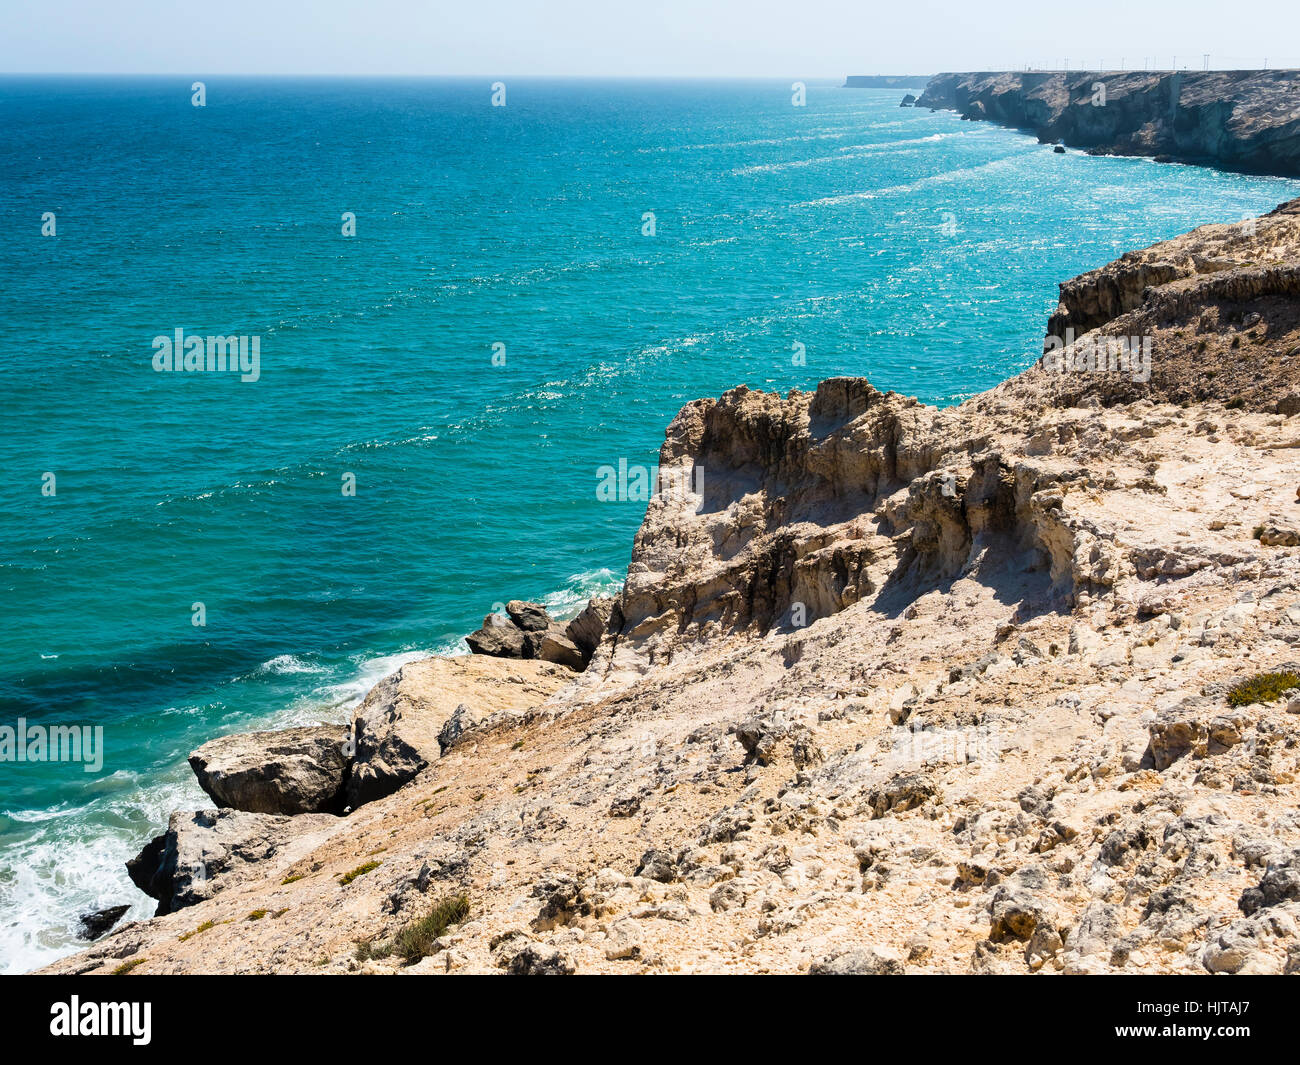 Oman, Ash Sharqiyah, Ad Daffah,  cliff coast Stock Photo